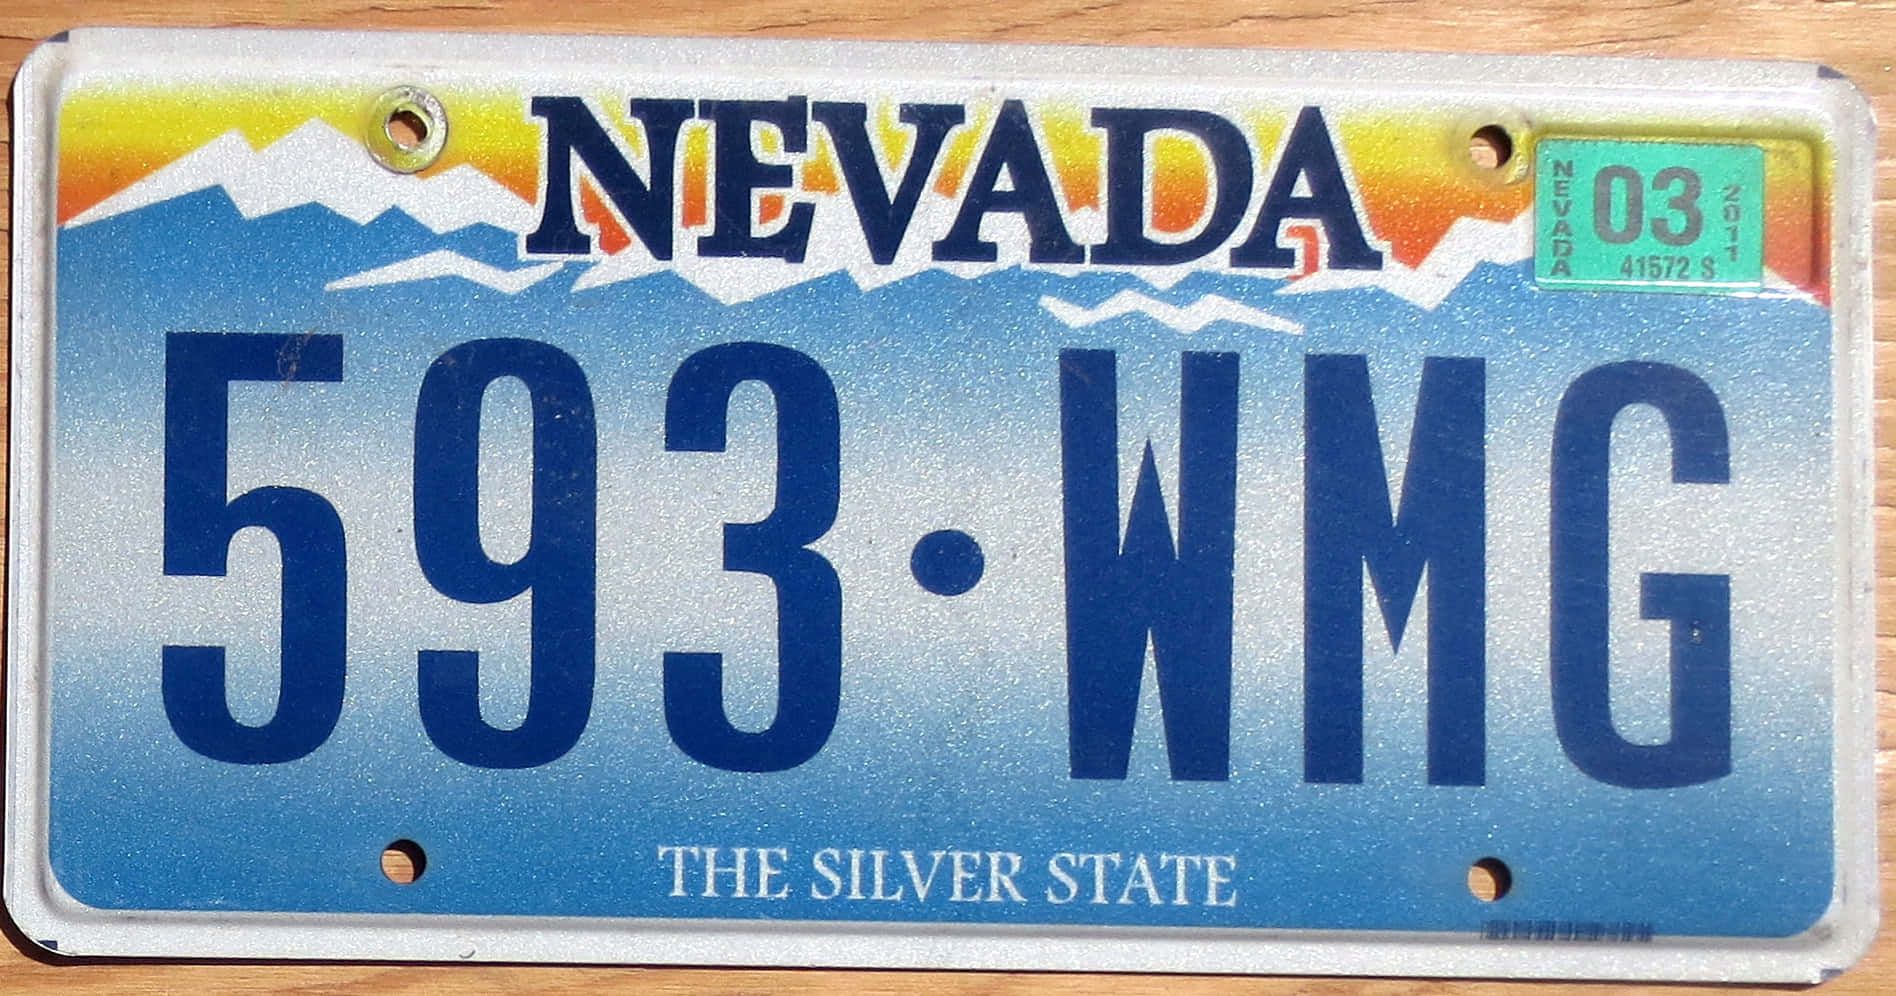 Placade Licencia De Nevada Con Montañas Frescas.